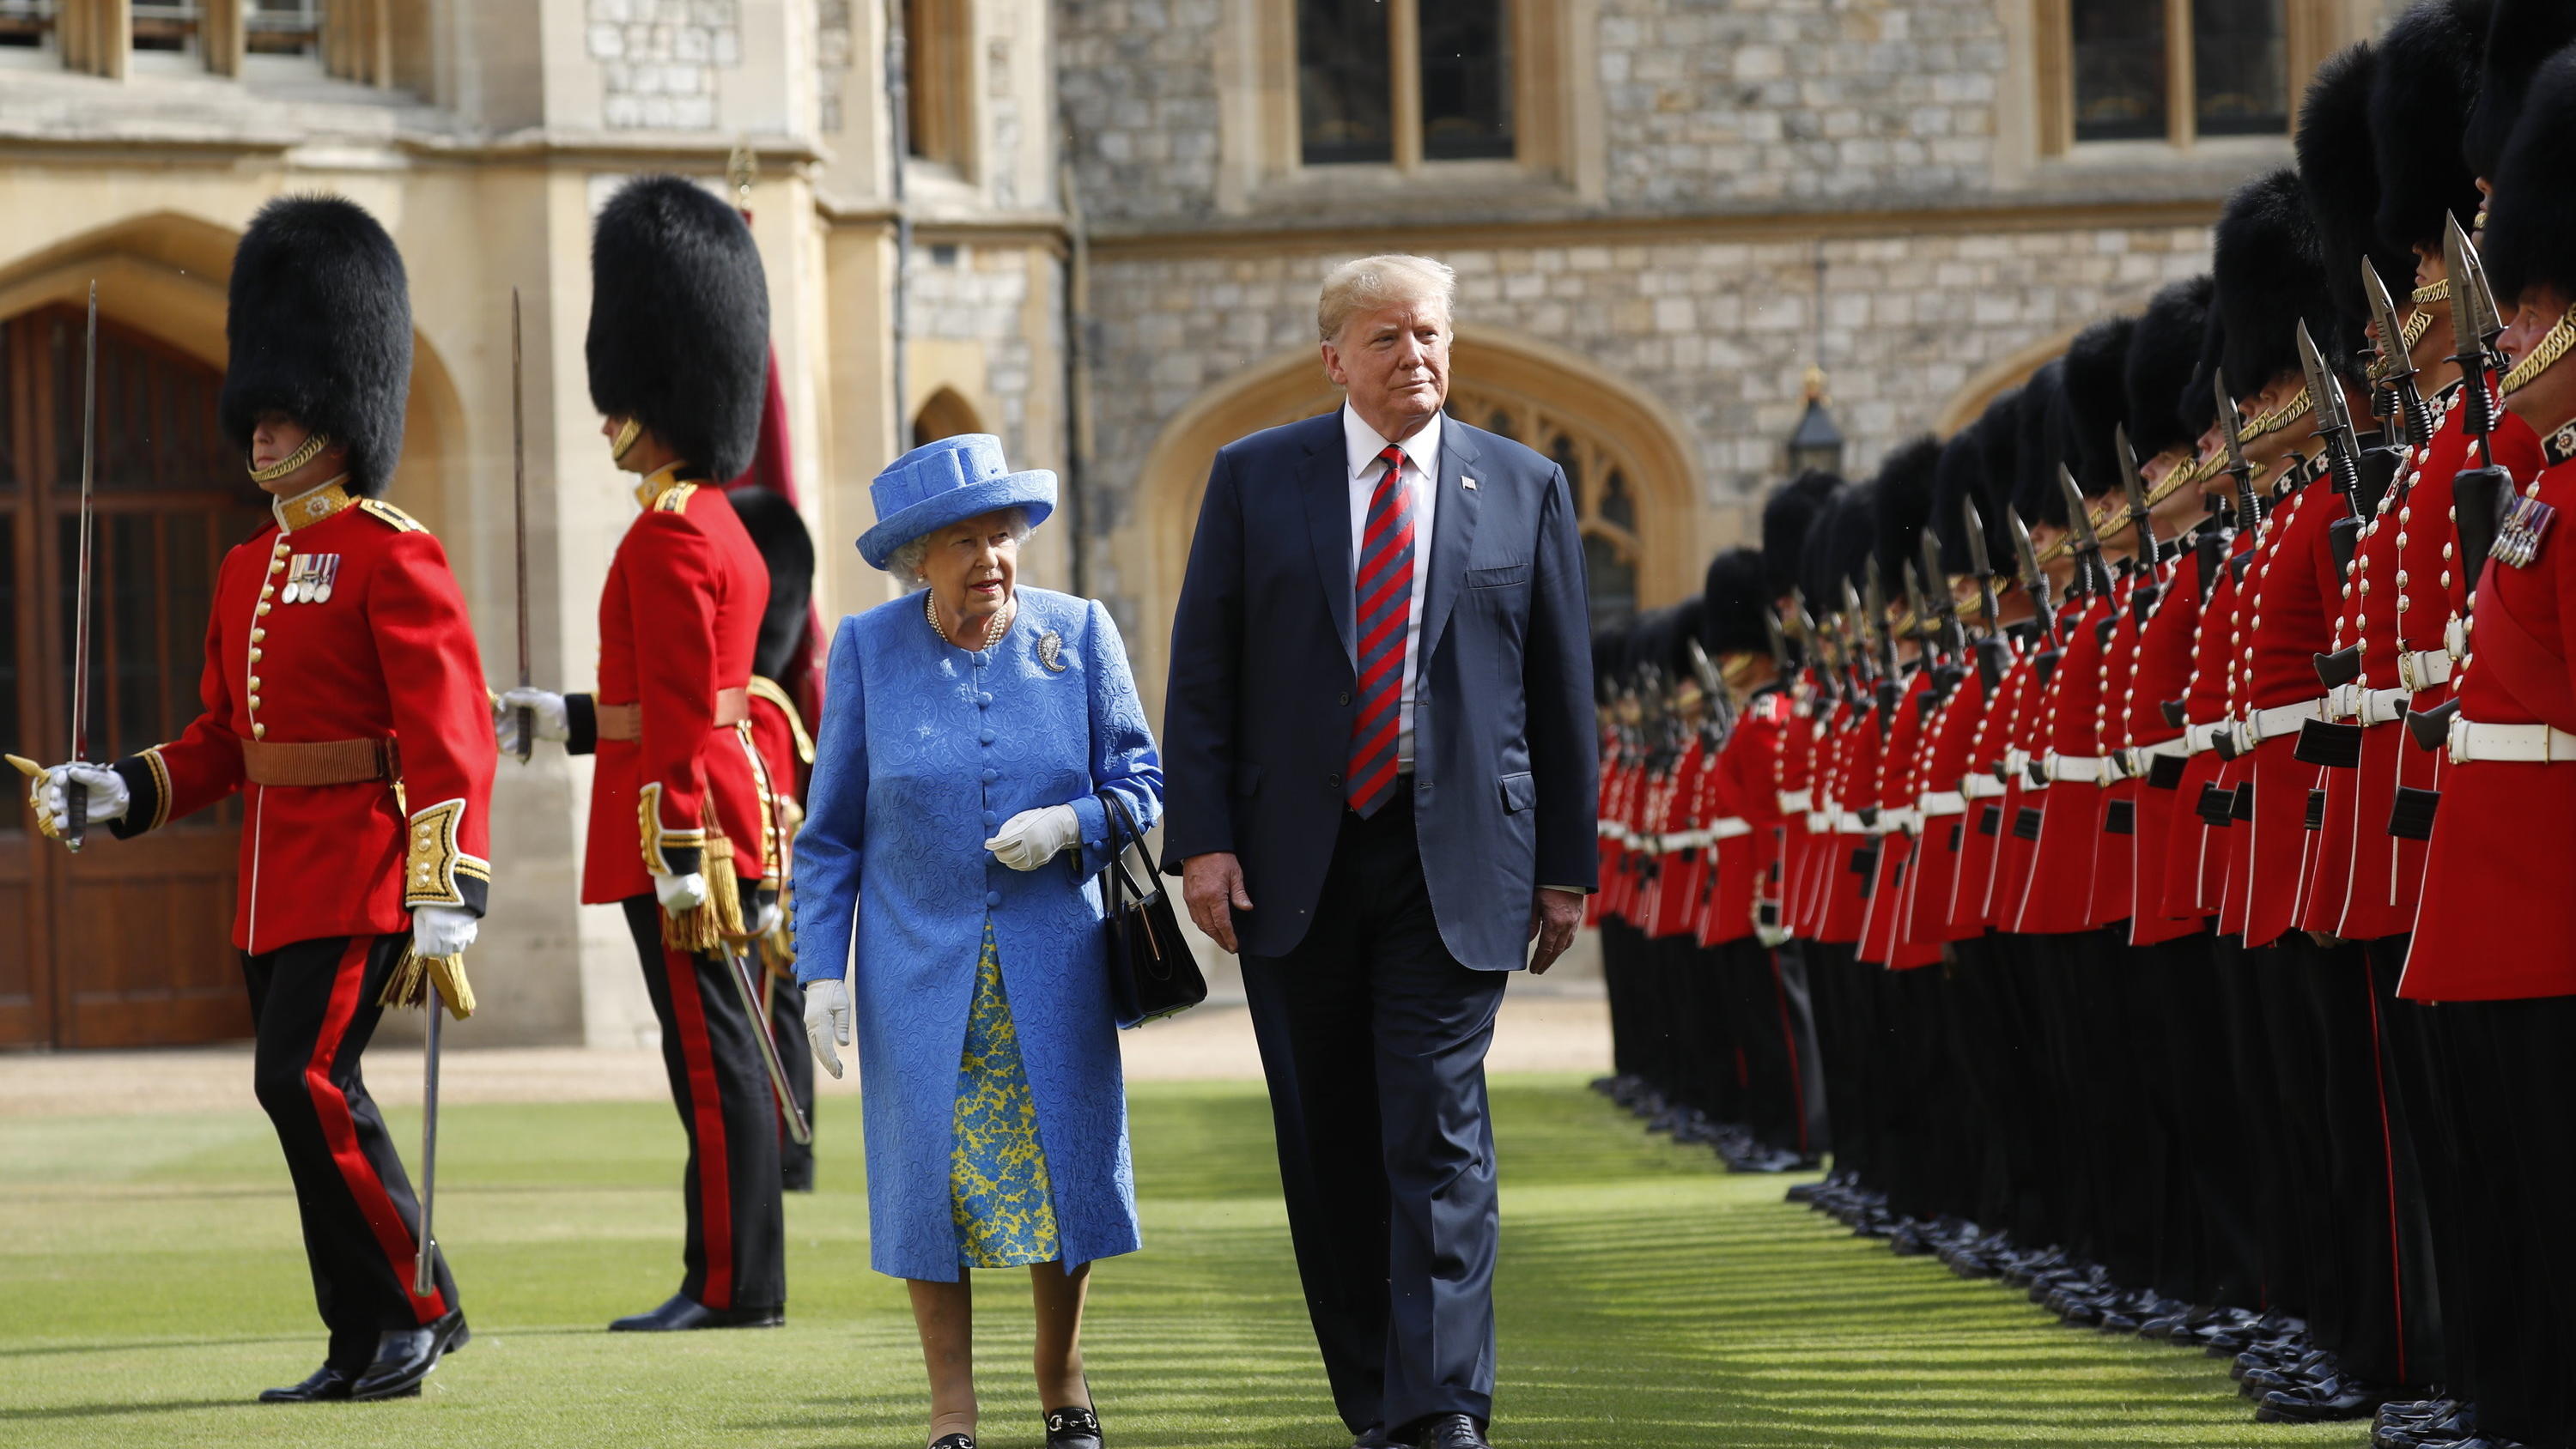 US-Präsident Trump mit der Queen in Großbritannien bei der Ehrengarde in 2018